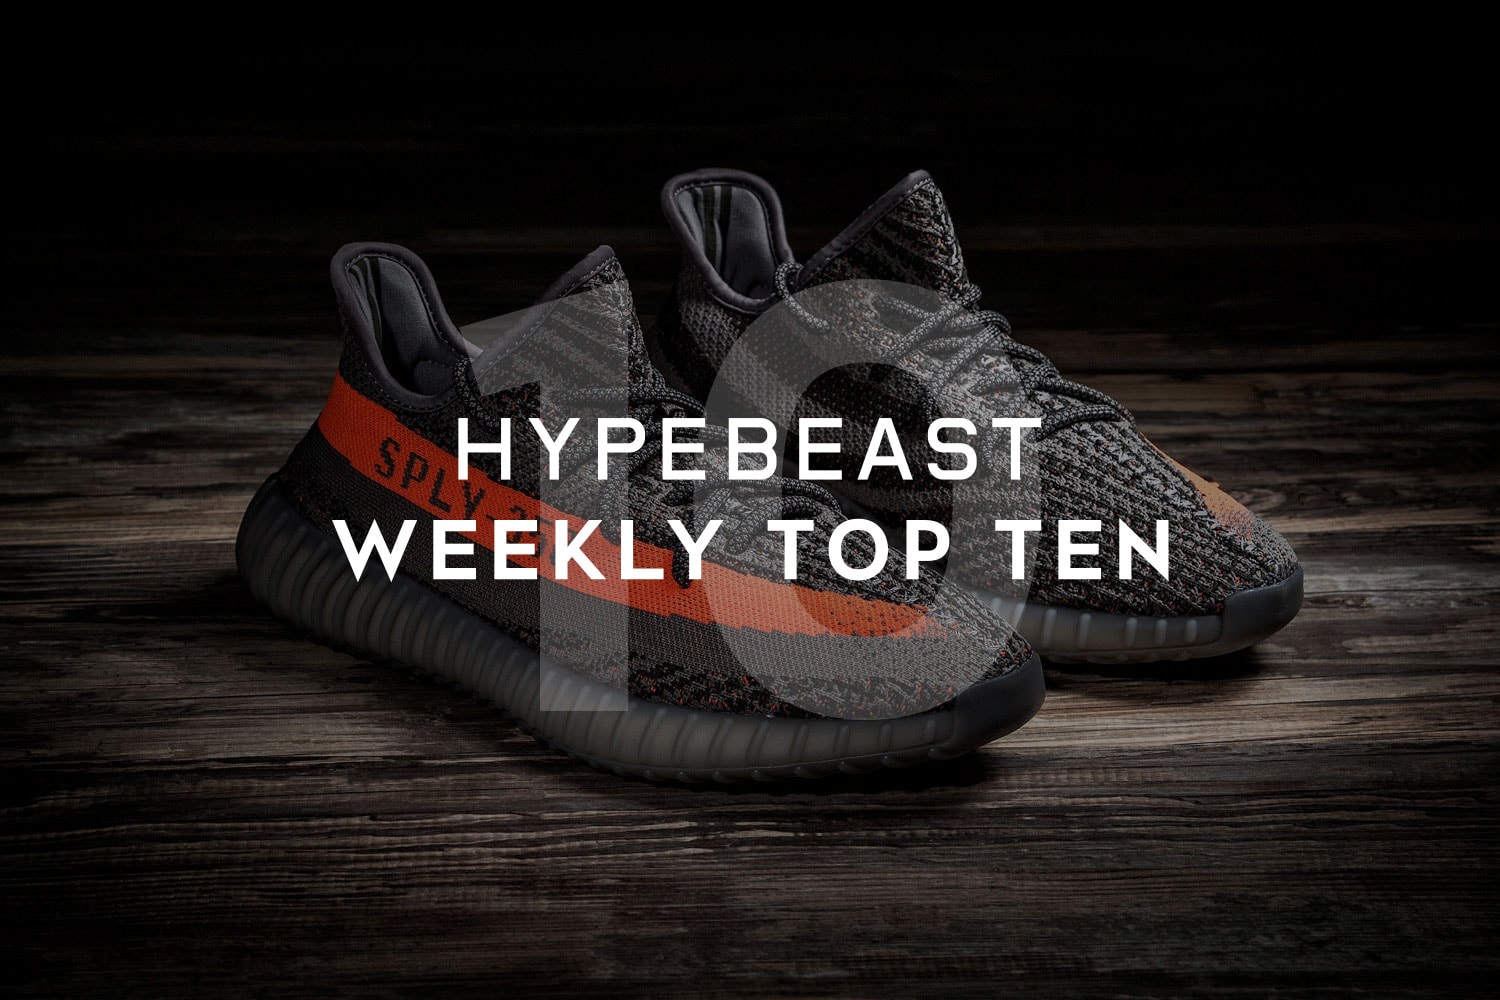 hypebeast weekly top ten yeezy boost